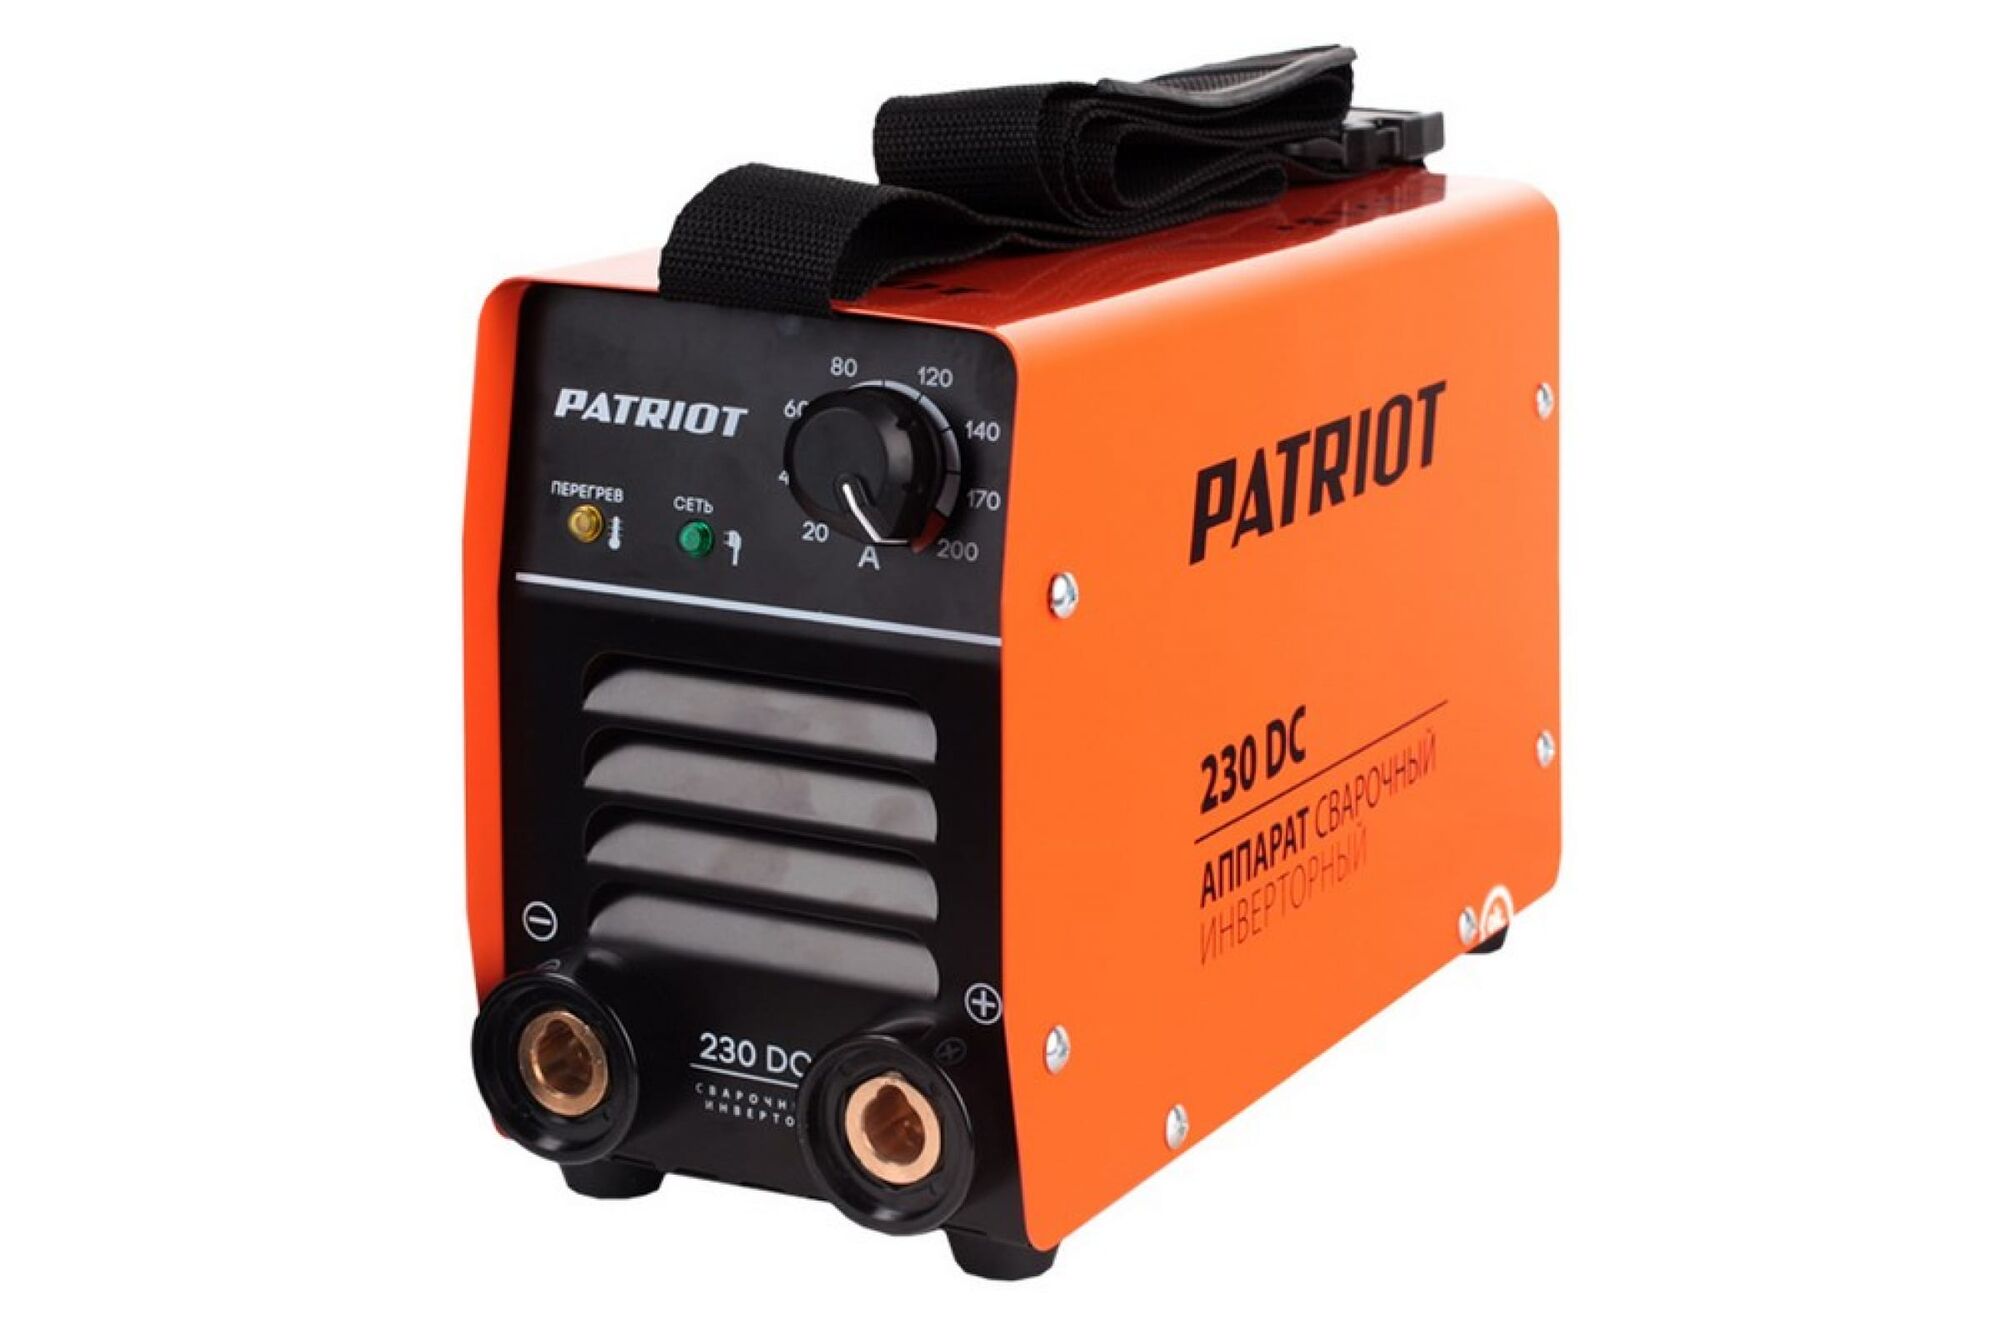 Сварочный аппарат PATRIOT 230DC 605302520